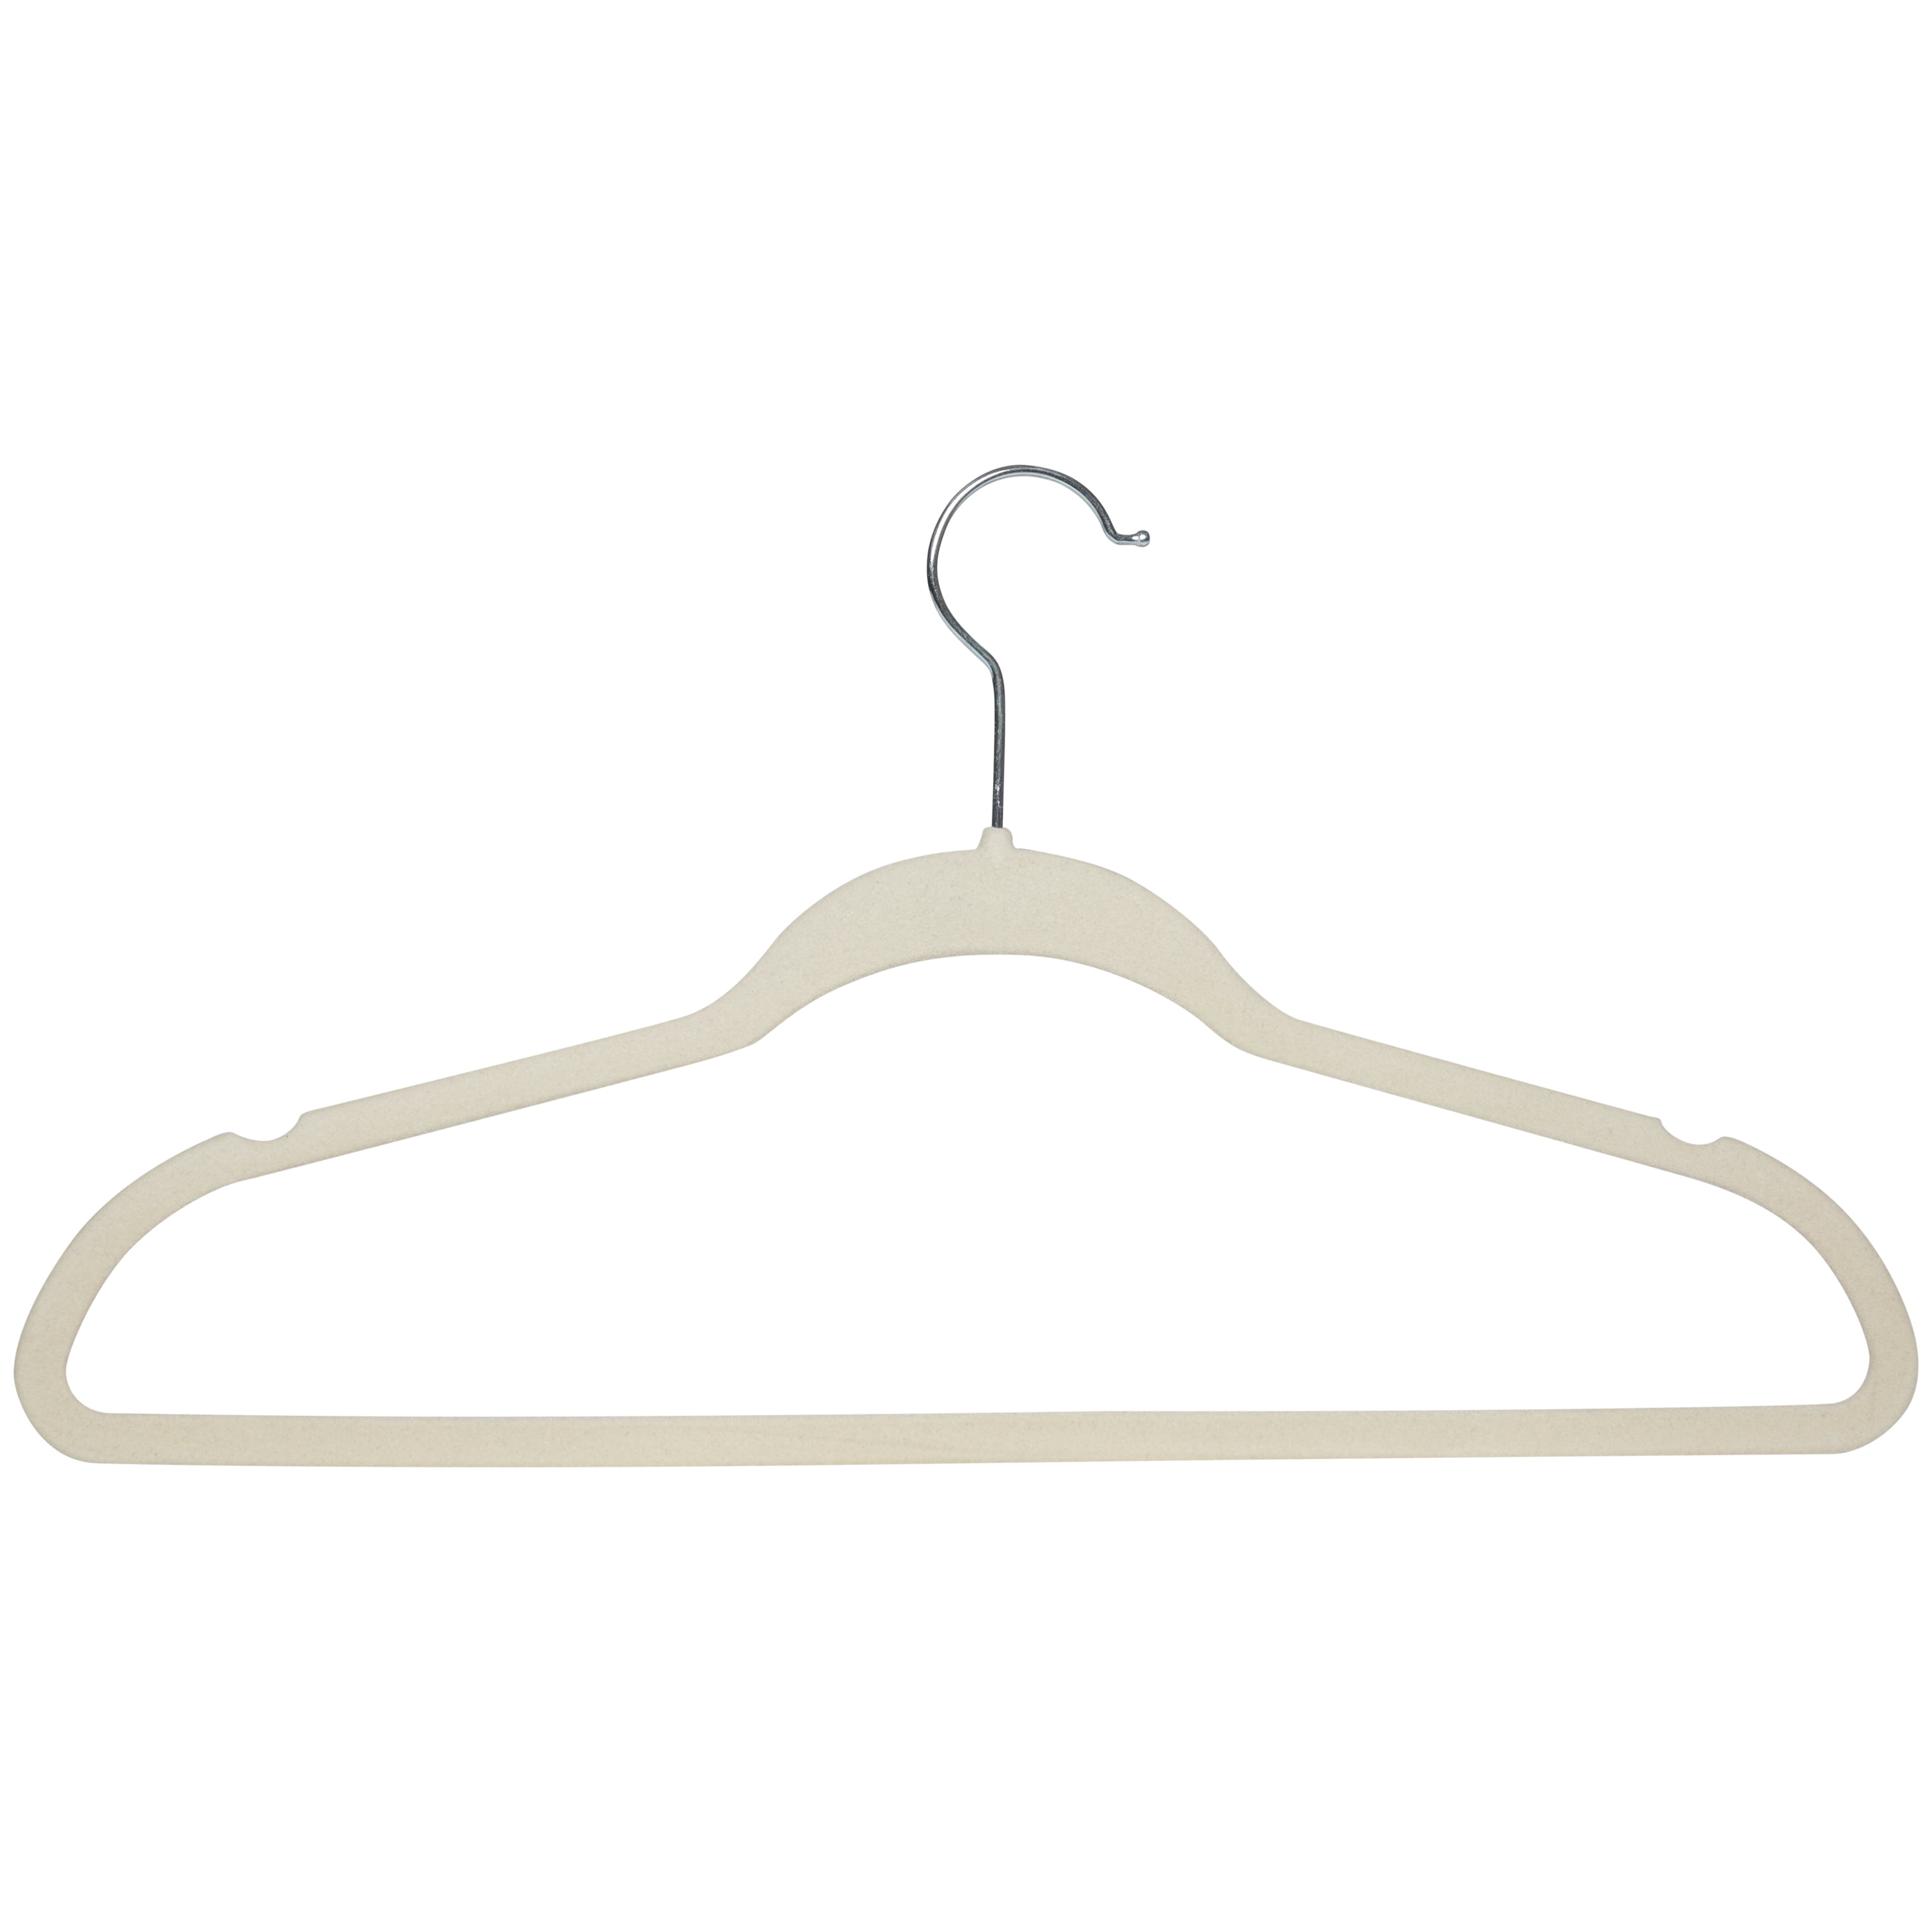 Ivory Slim-Profile Non-Slip Velvet Hangers (25-Pack)